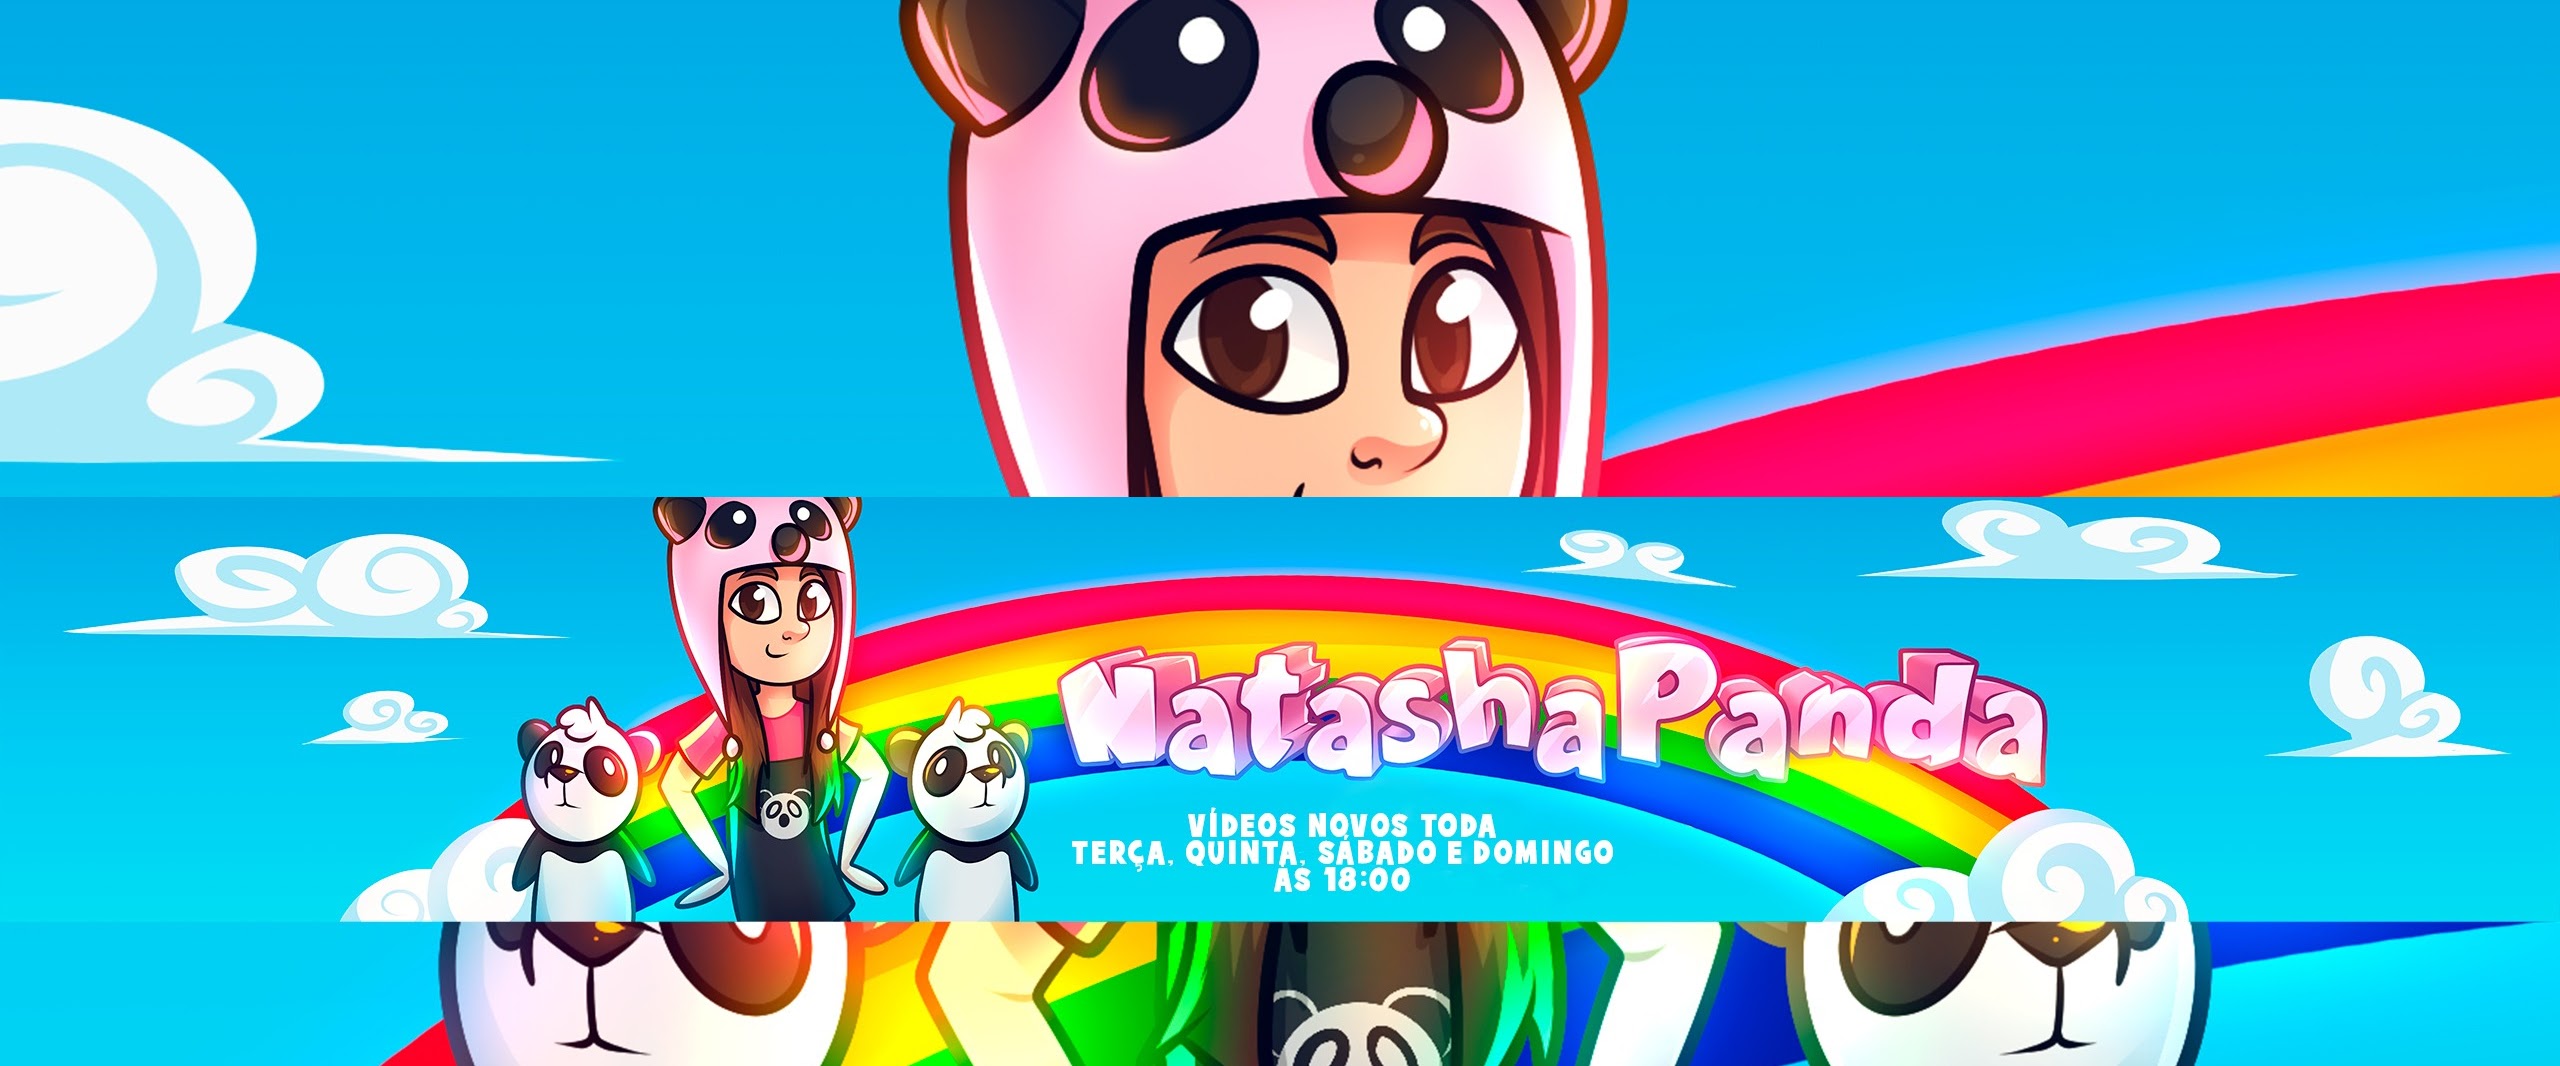 Natasha Panda fala sobre clipe de Bem Mais Colorido: Queria